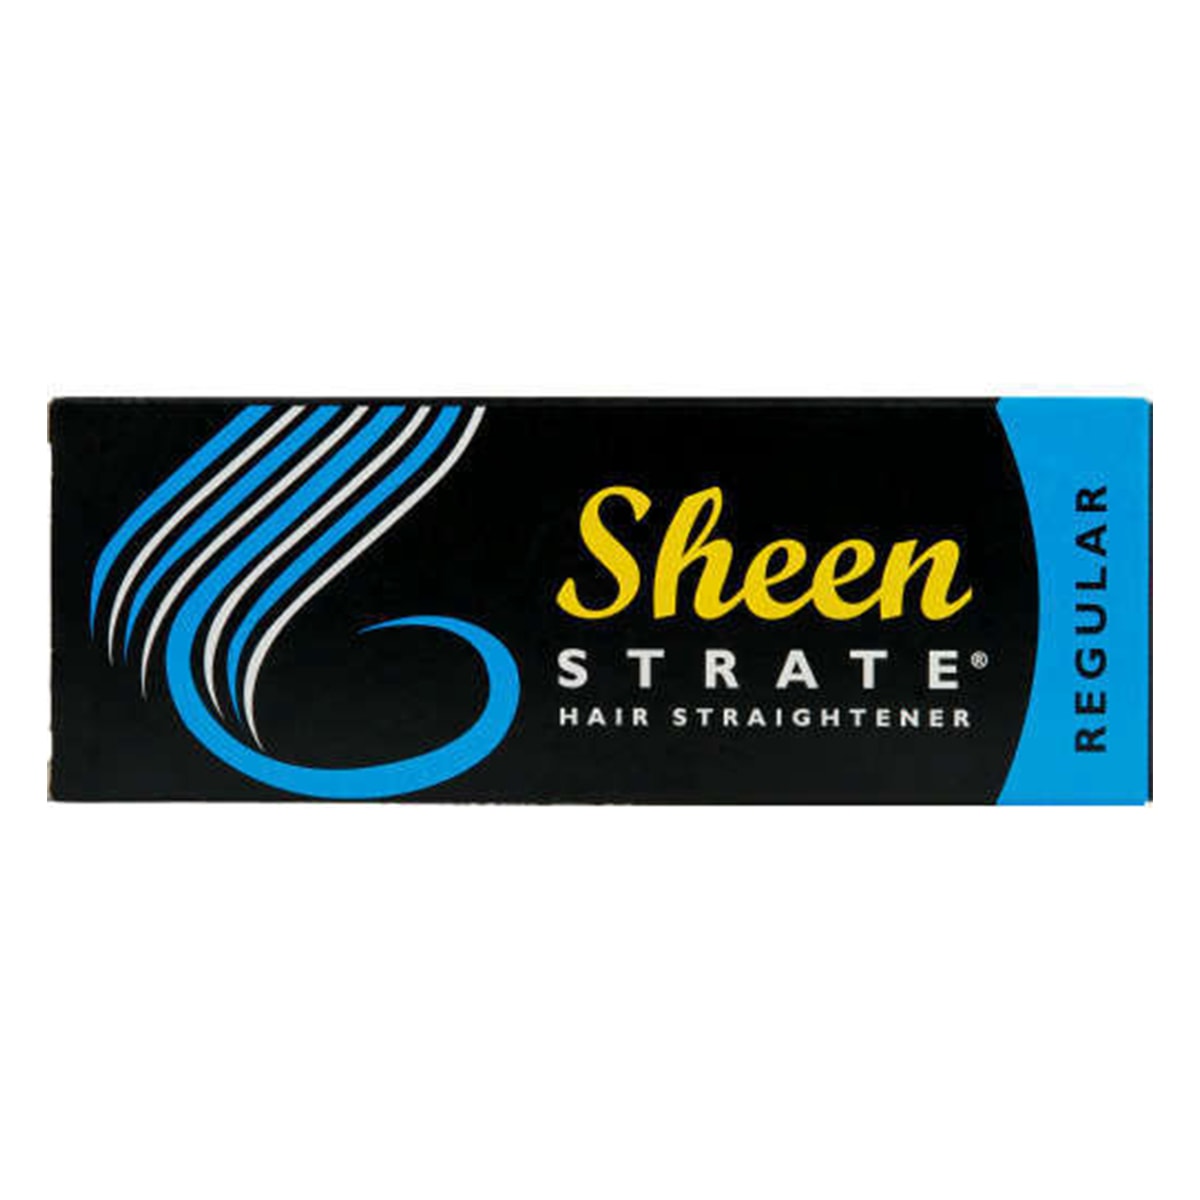 Buy Sheen Strate Hair Straightener (Regular) - 50 ml